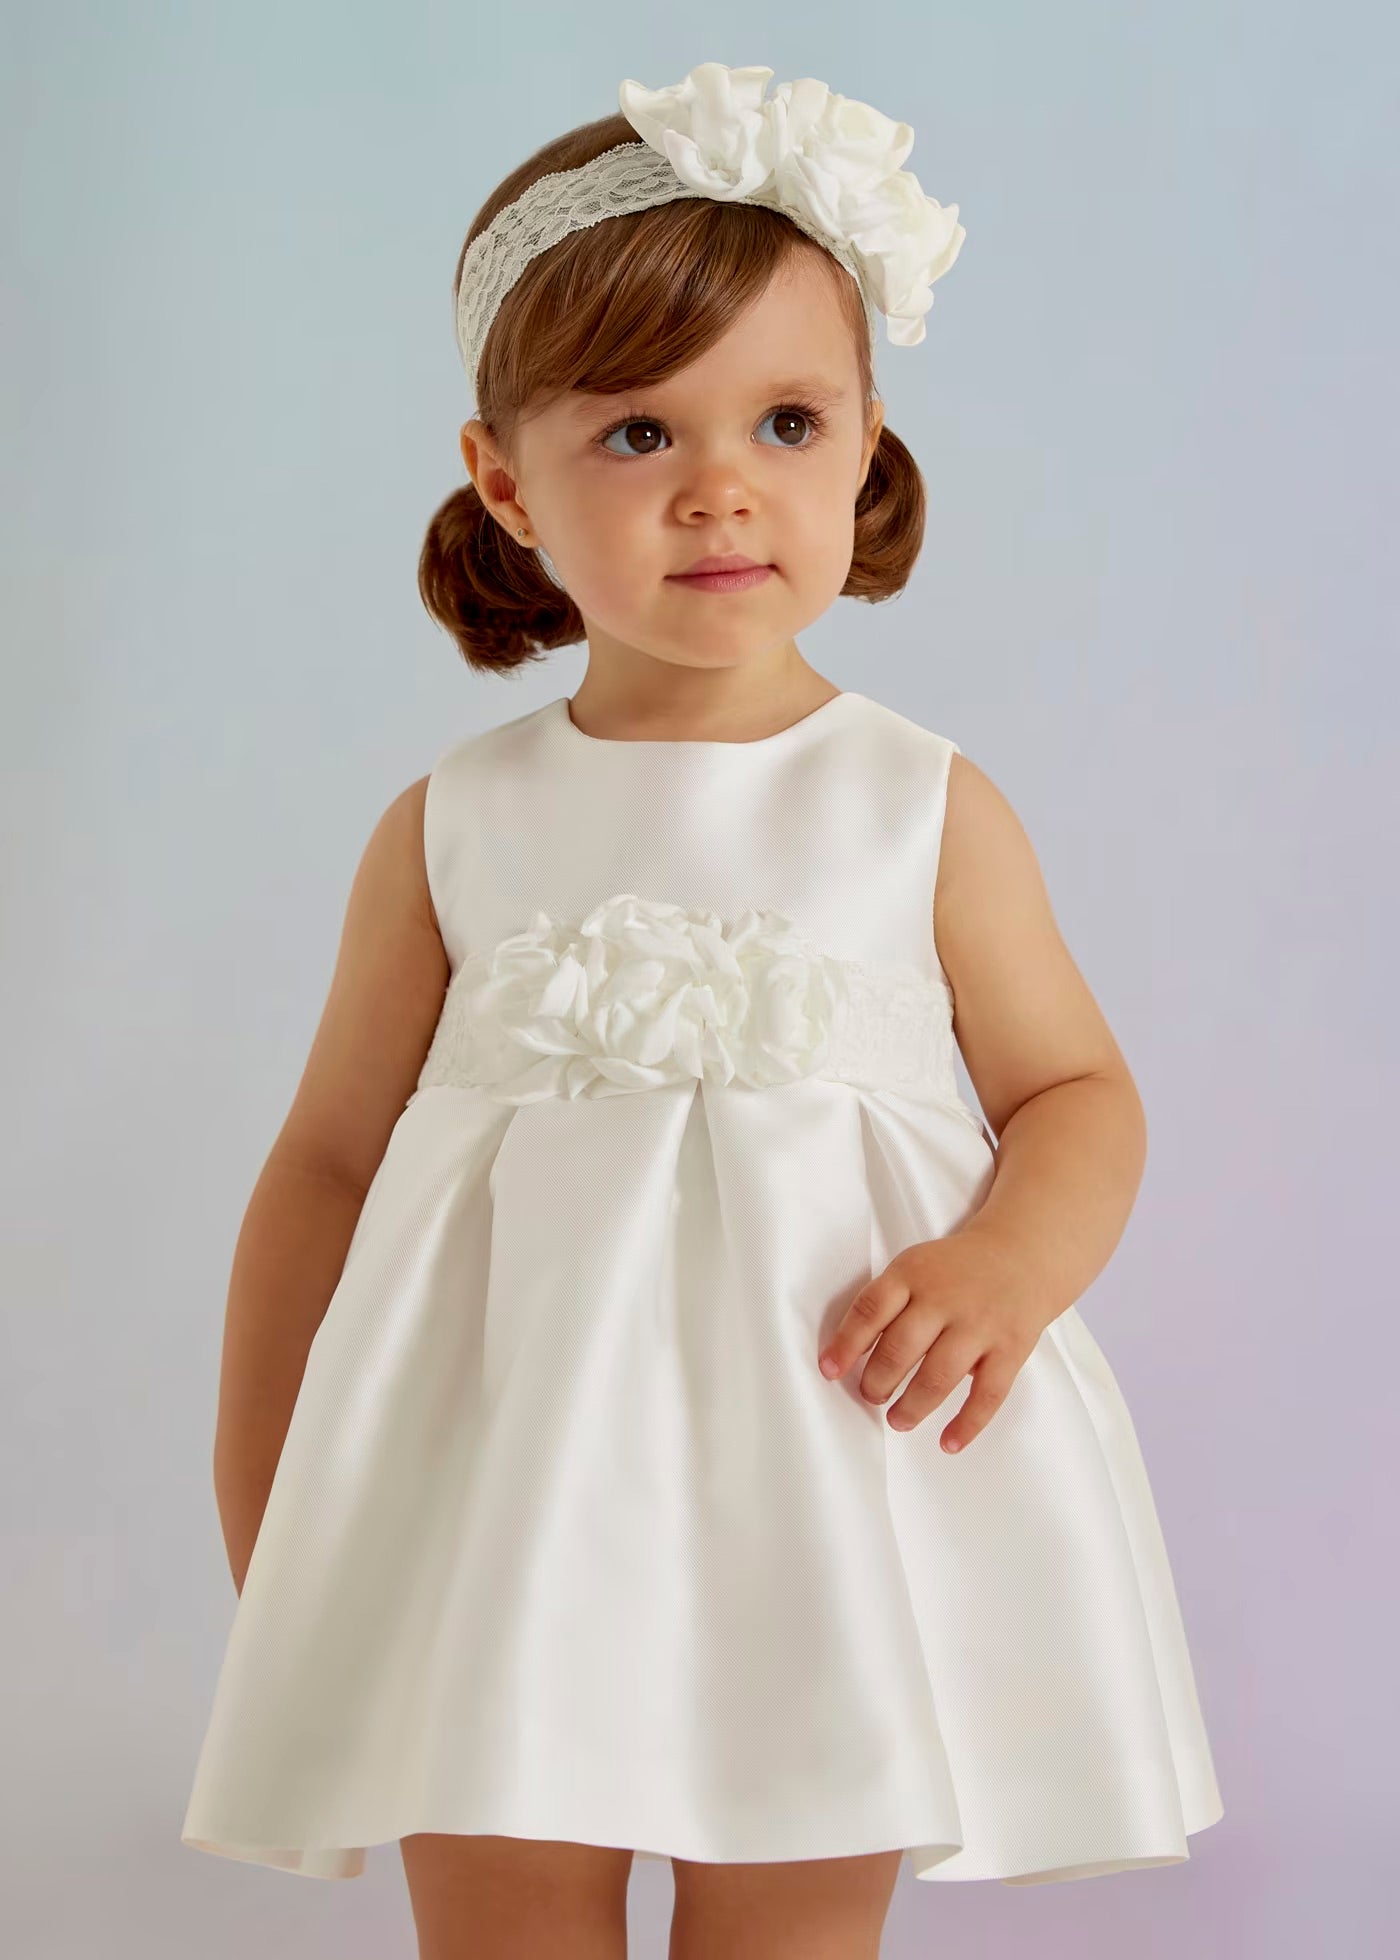 Mikado White Dress Baby